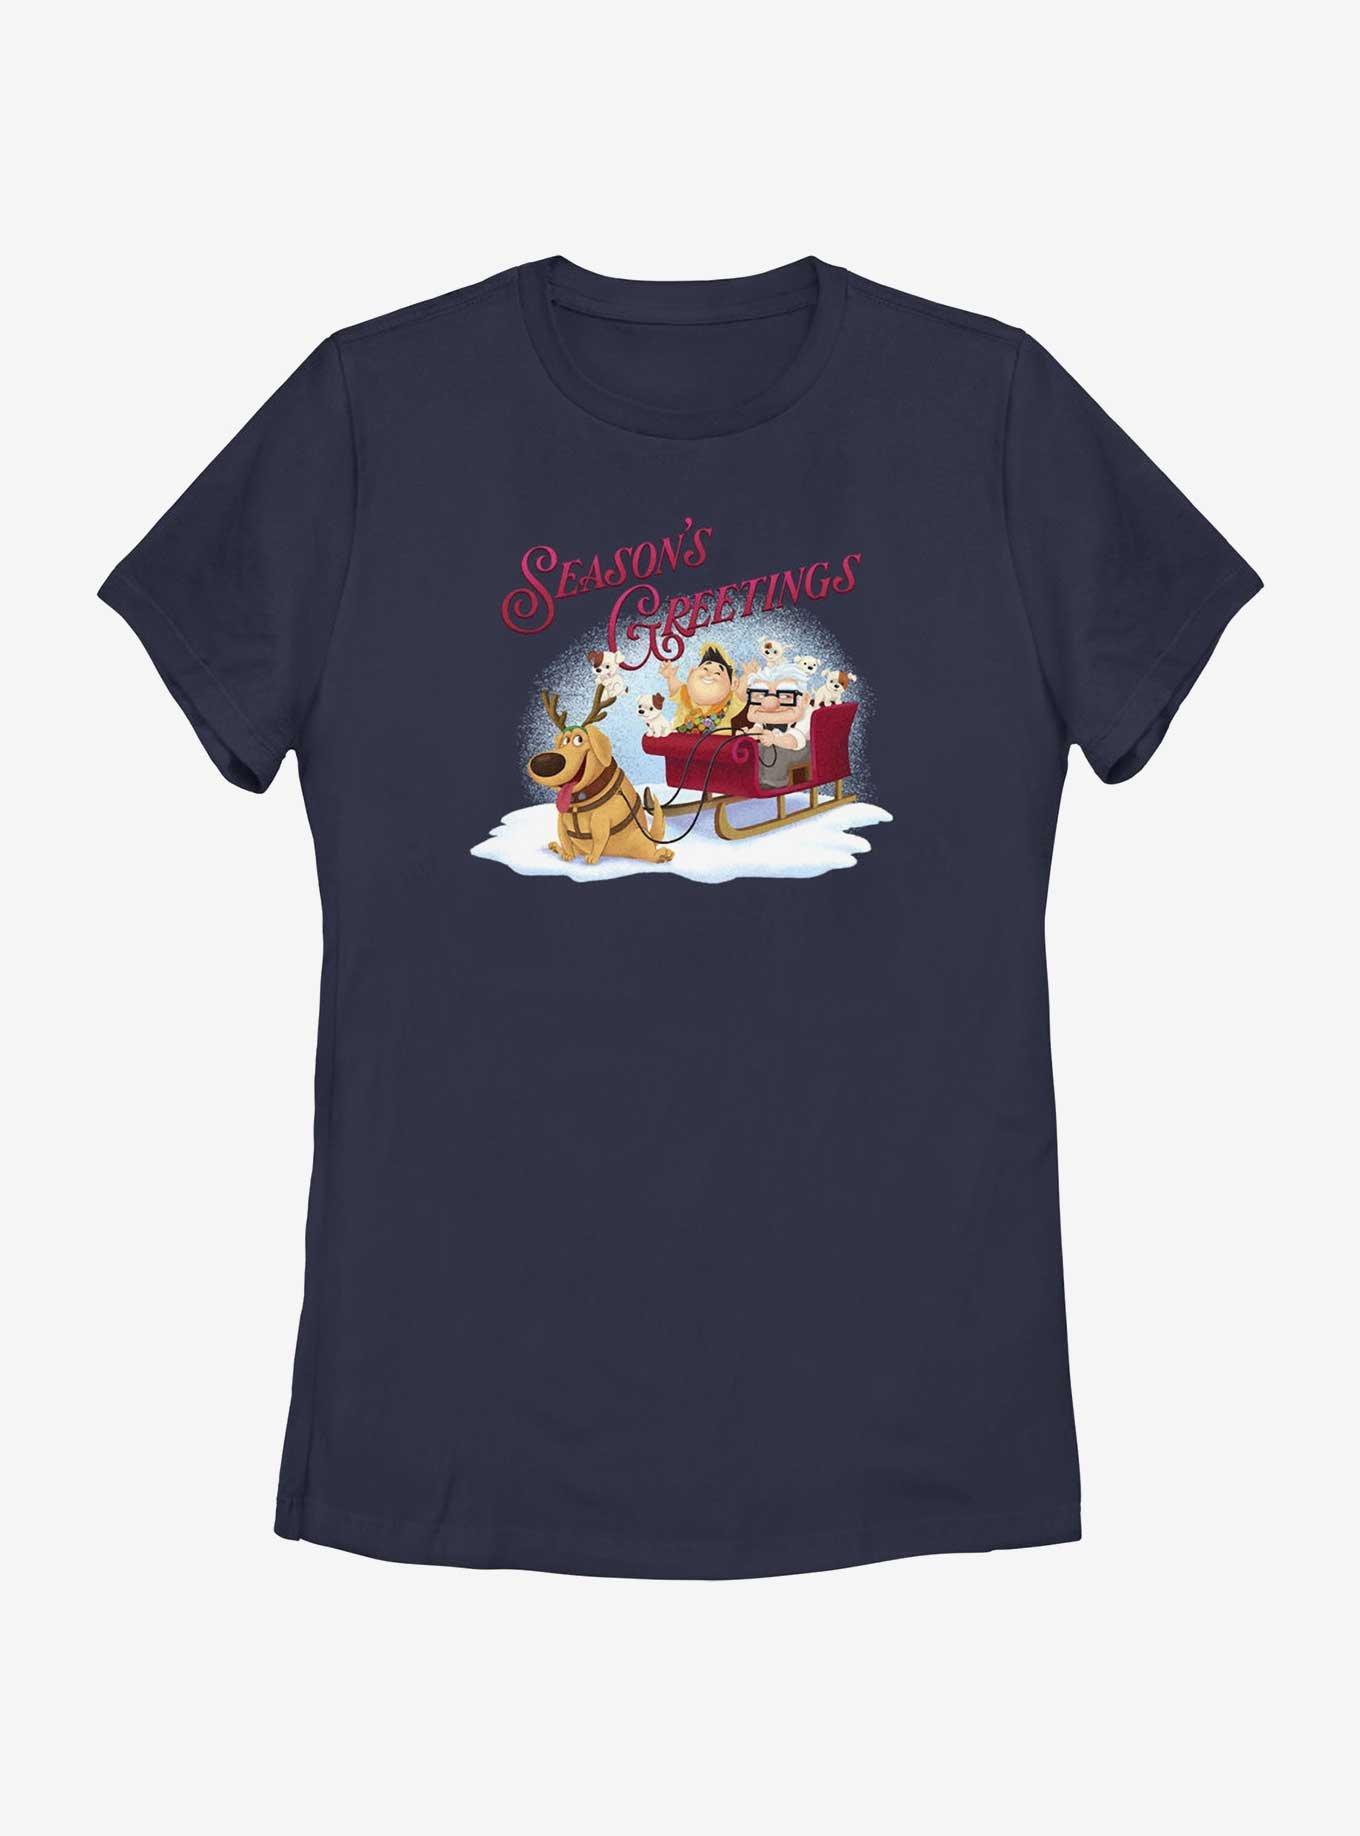 Disney Pixar Up Seasons Greetings Womens T-Shirt, NAVY, hi-res